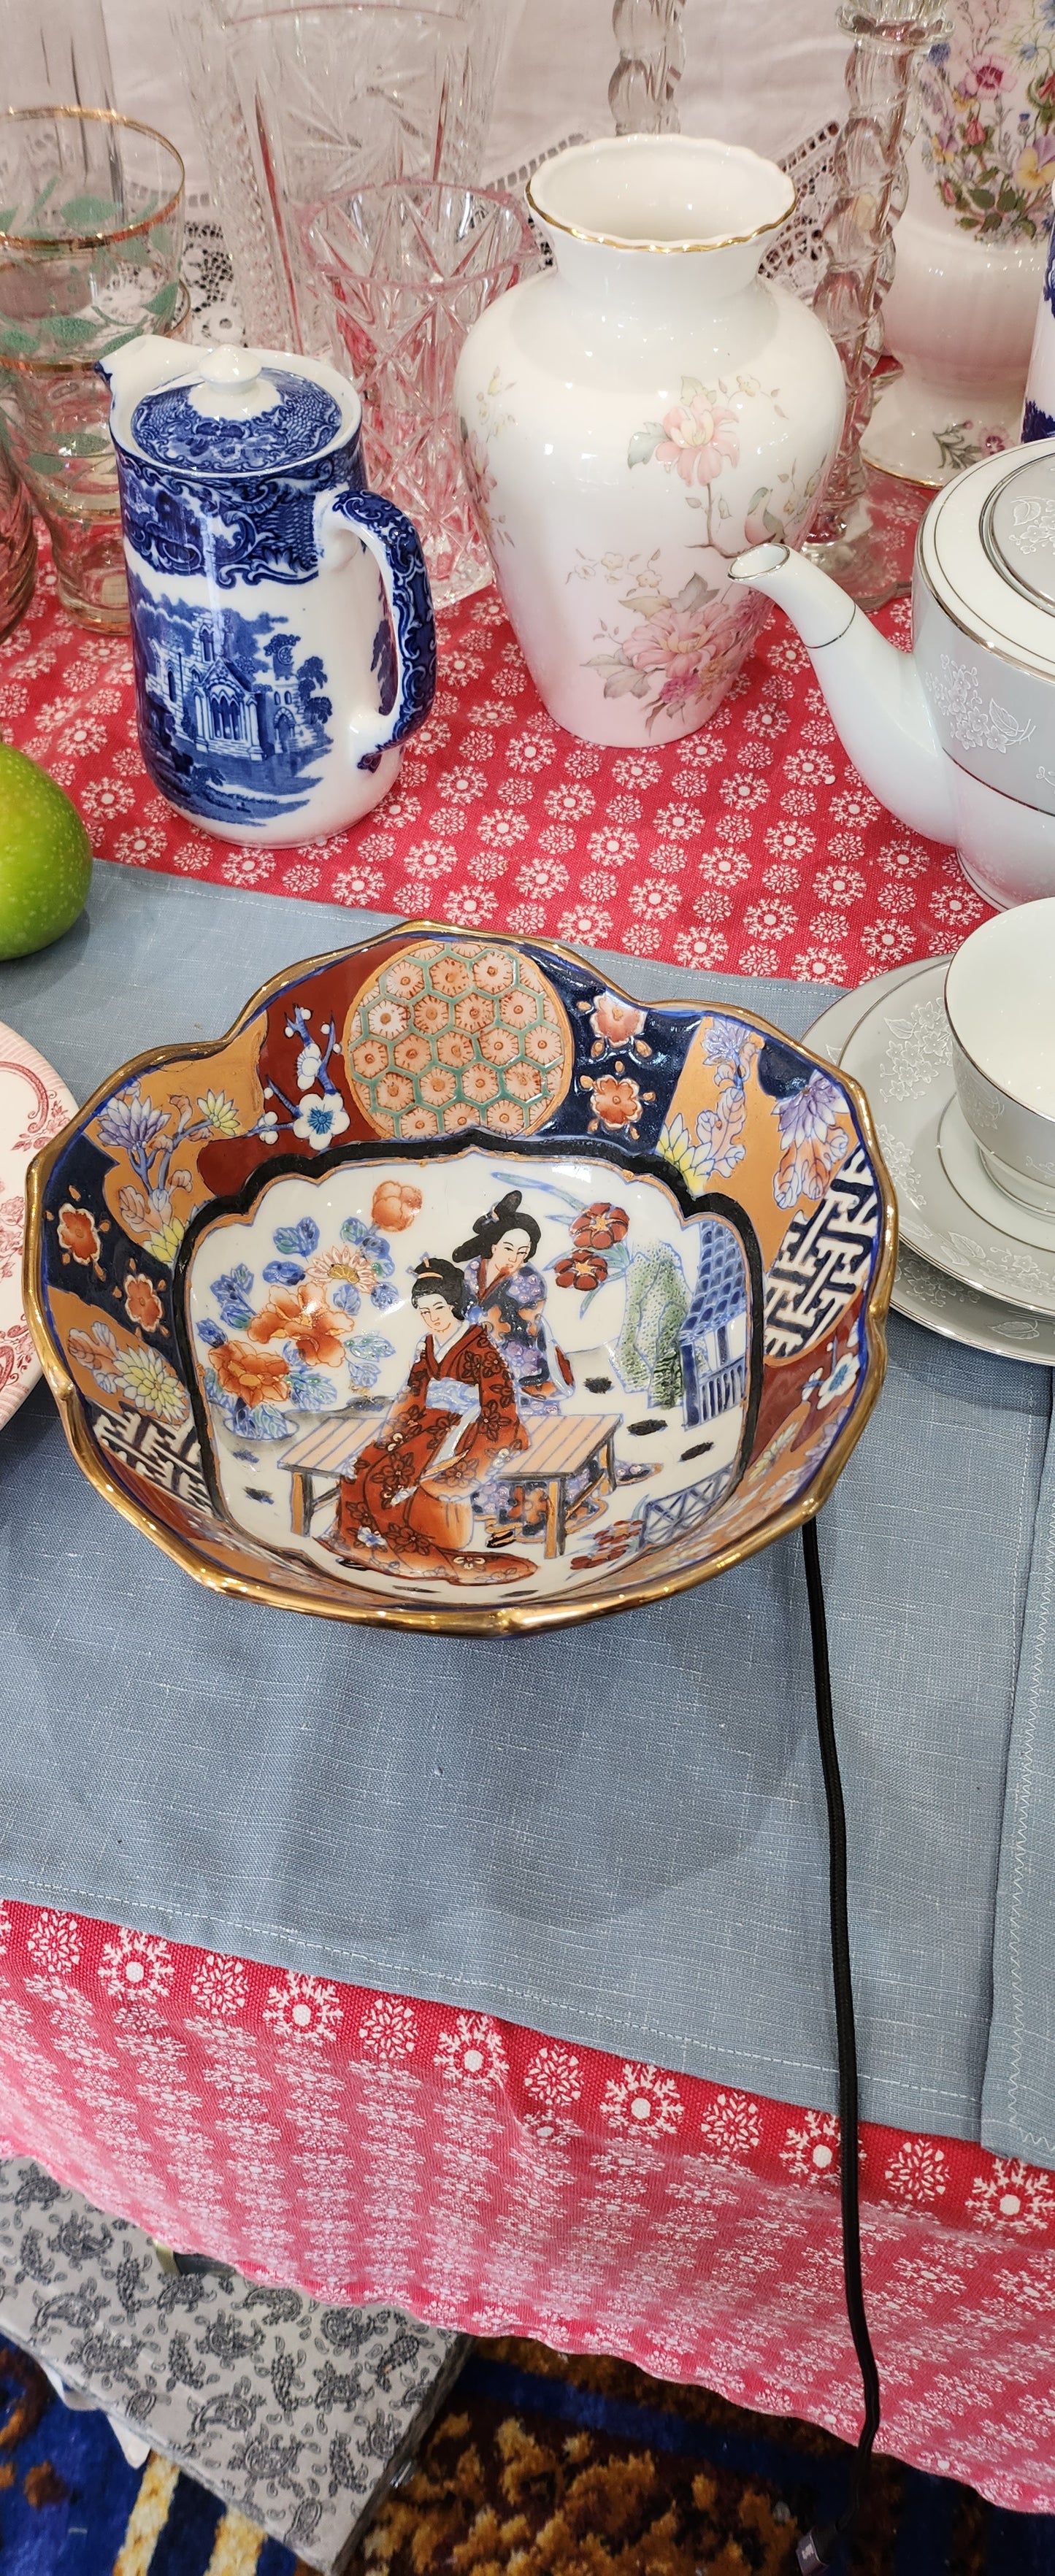 Sasutma hand painted big bowl